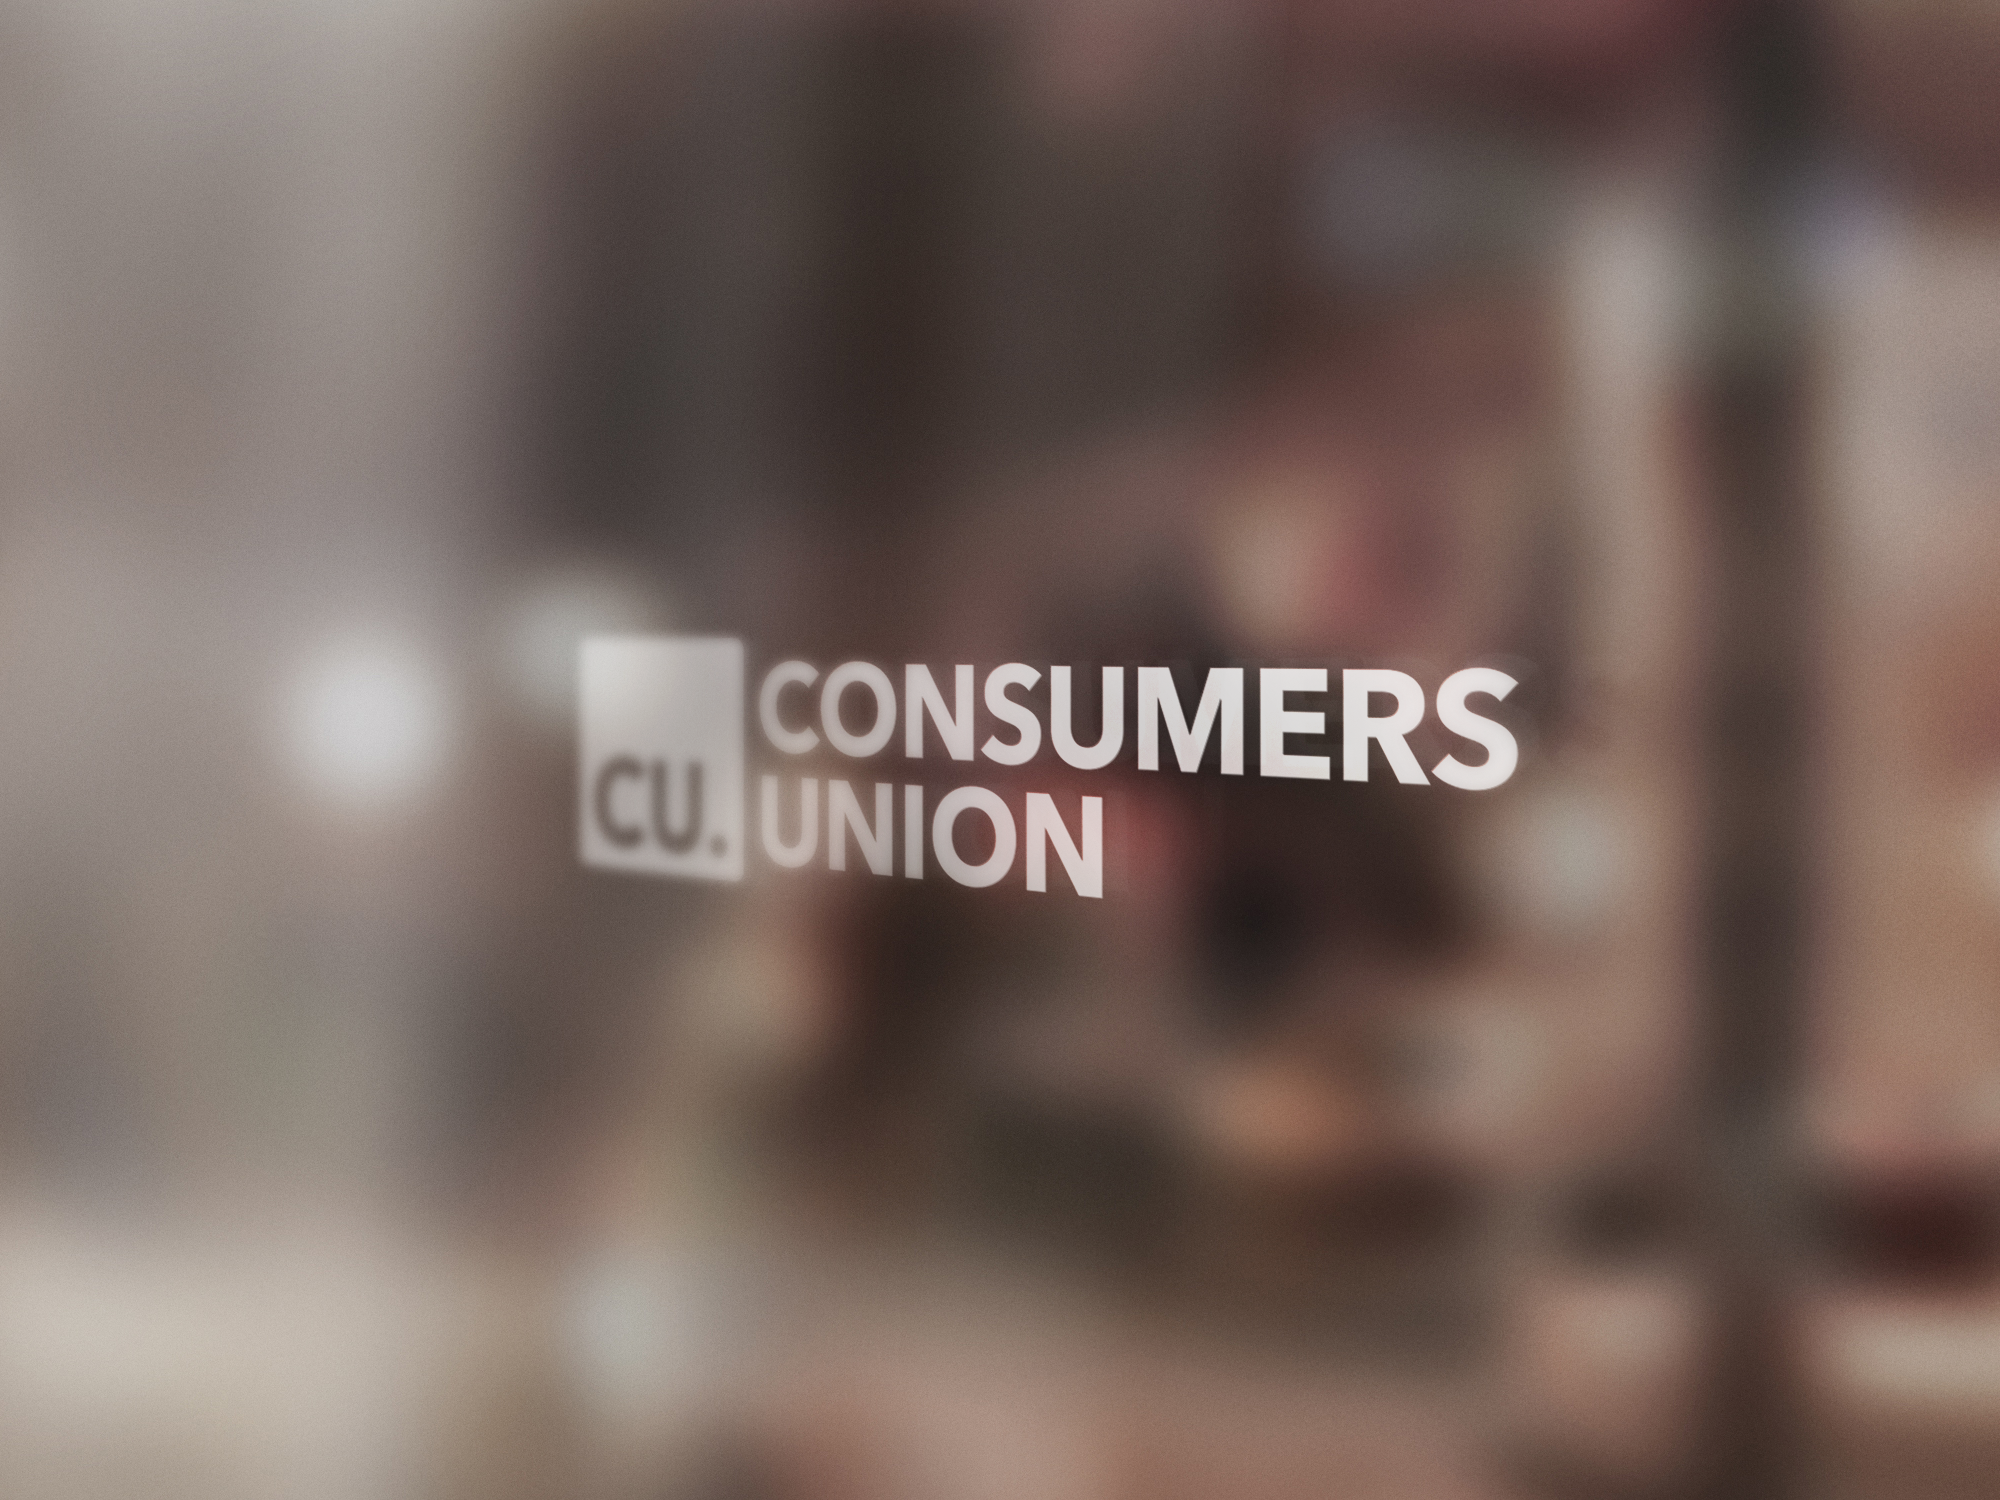 Consumers Union